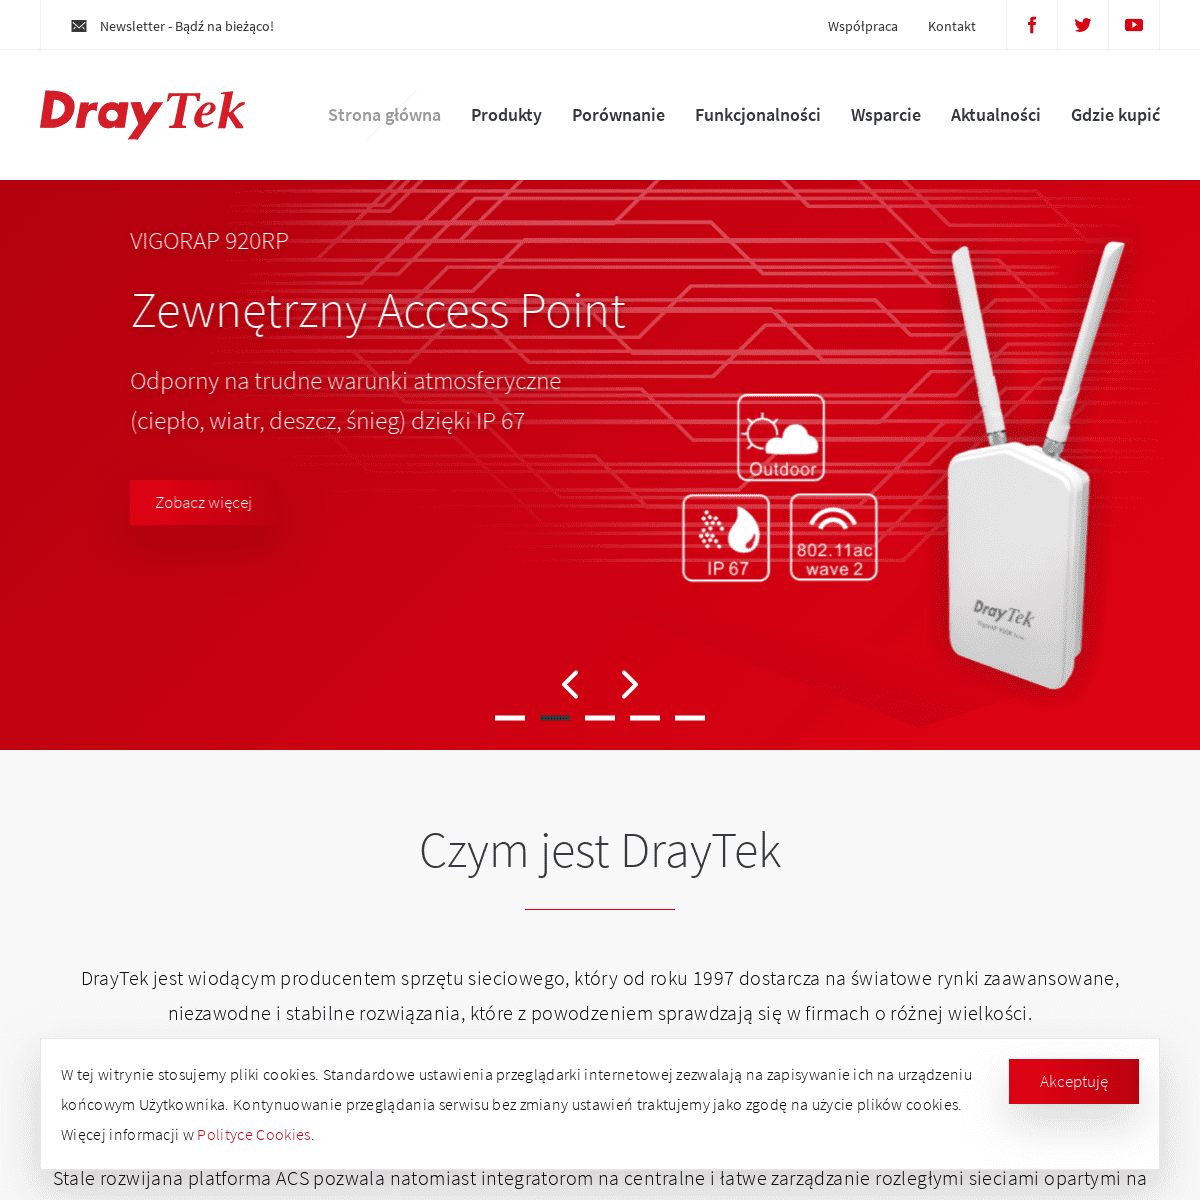 A complete backup of draytek.pl